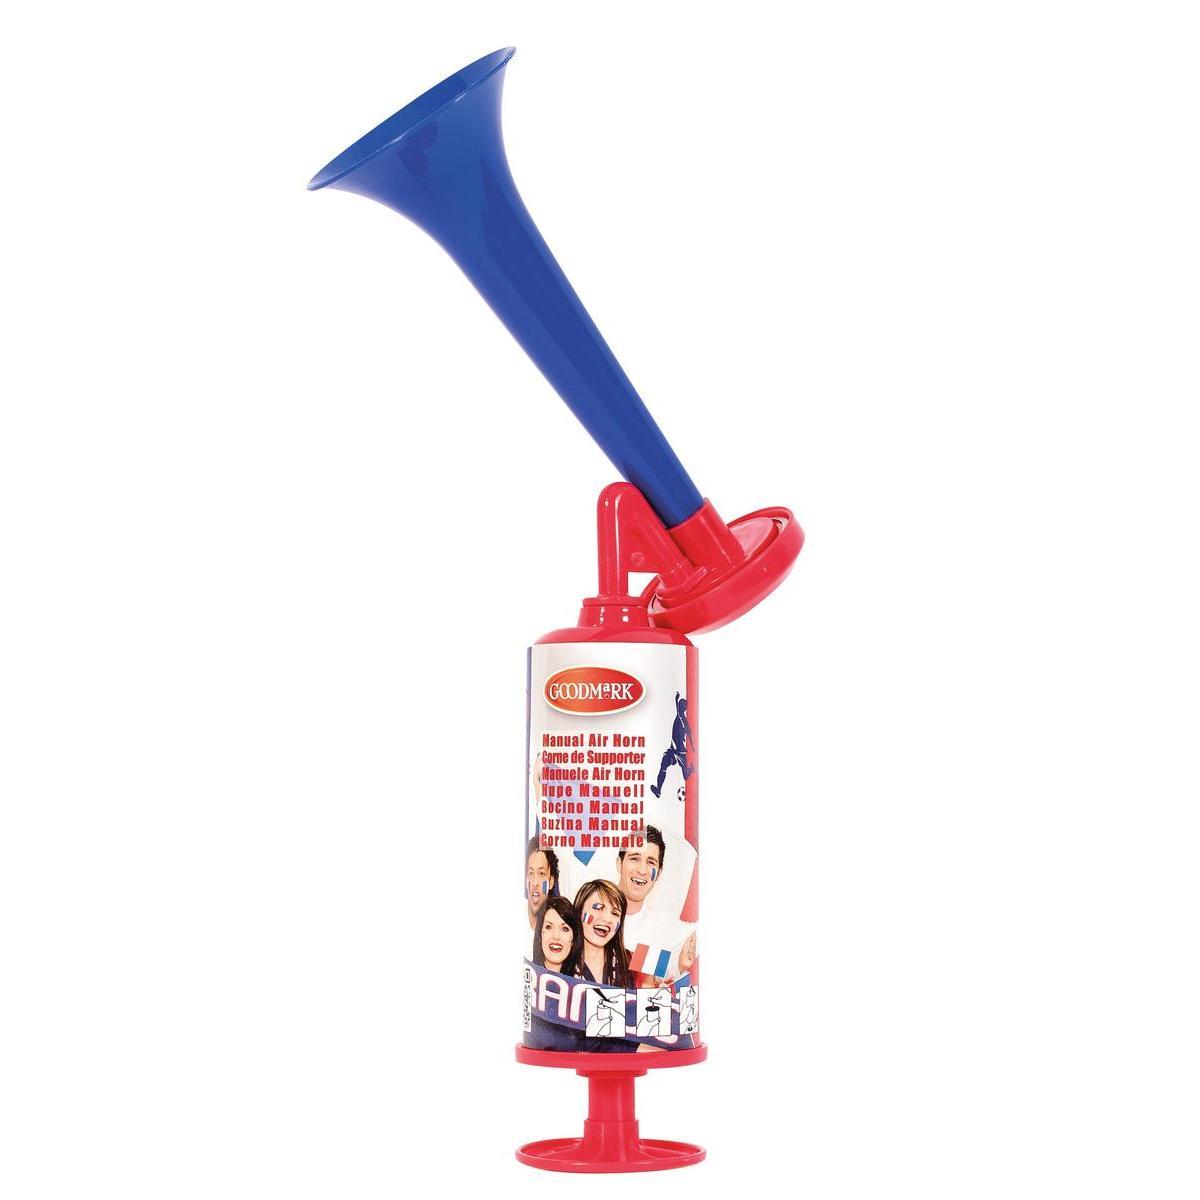 Corne de supporter manuelle - Plastique - 23 x 16 x H 7 cm - Rouge